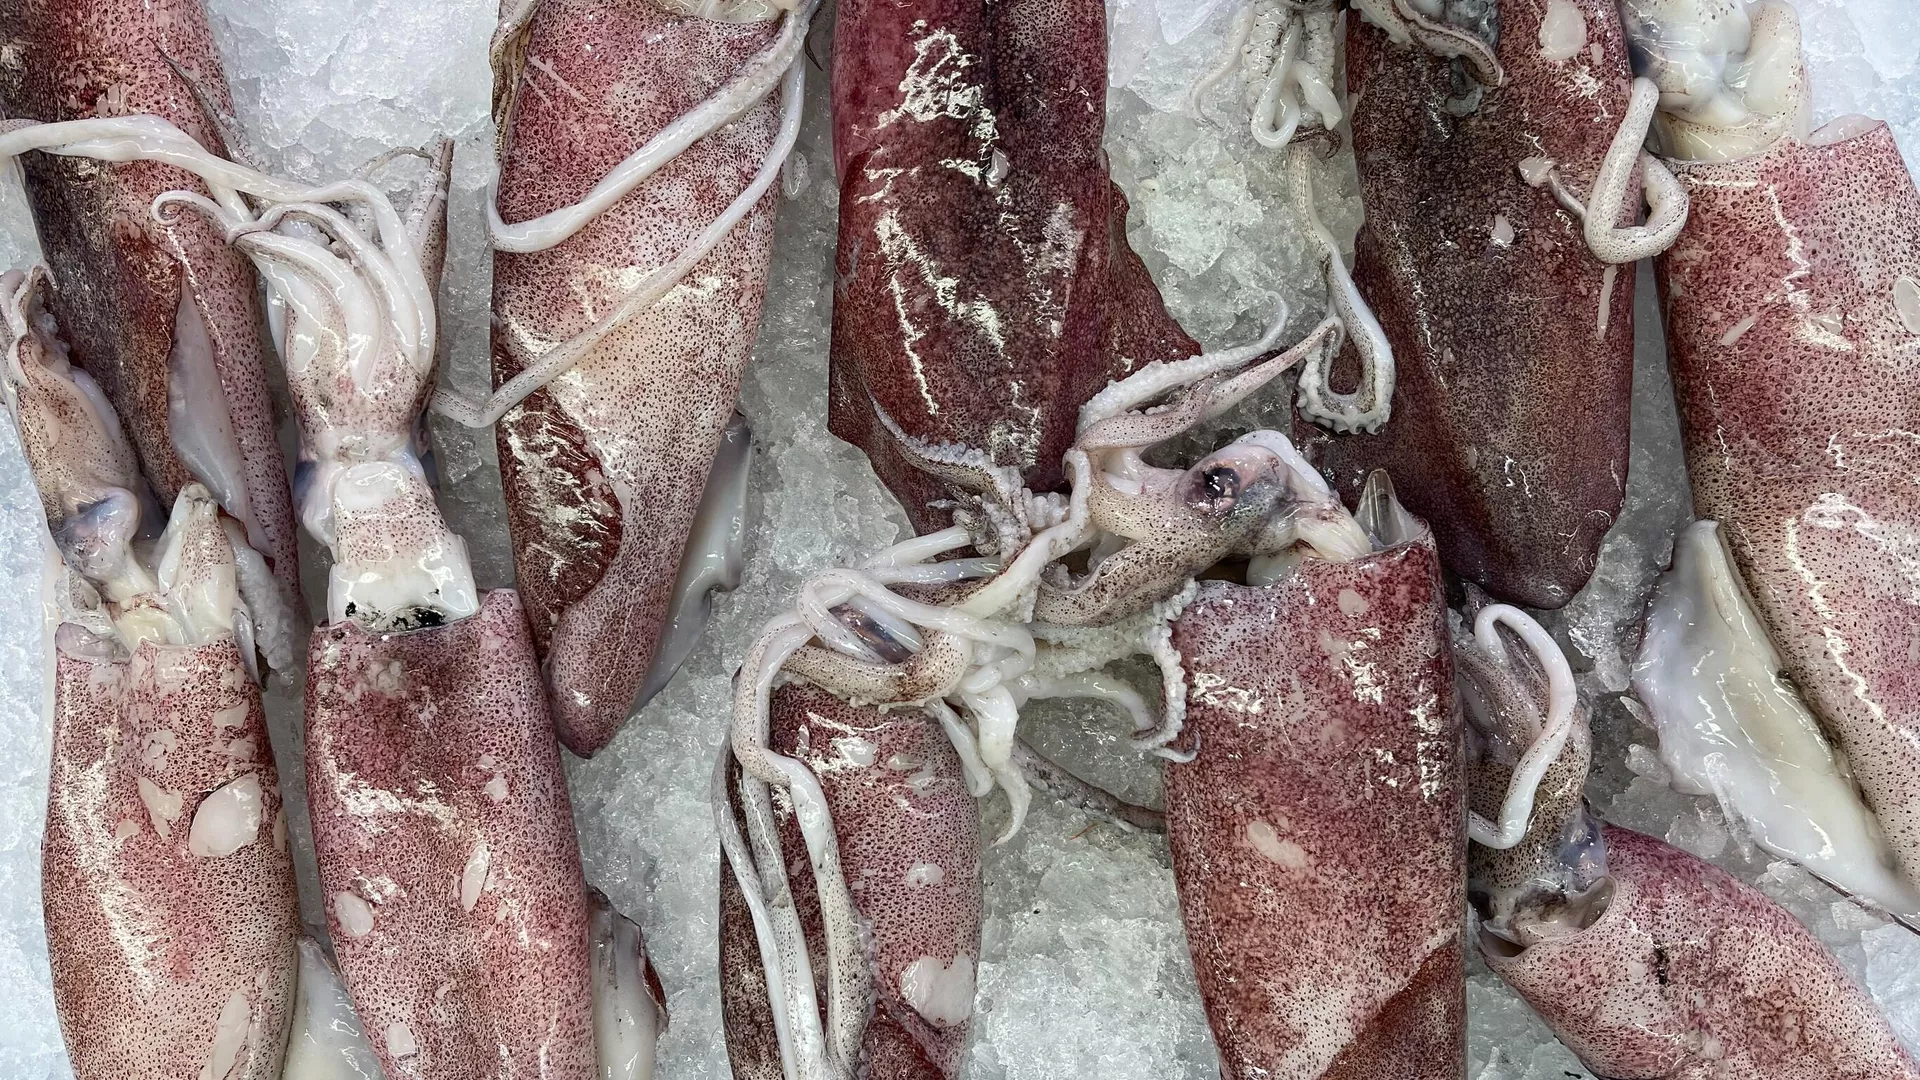  Una flota española partió hacia las Malvinas para comenzar la pesca ilegal de calamar